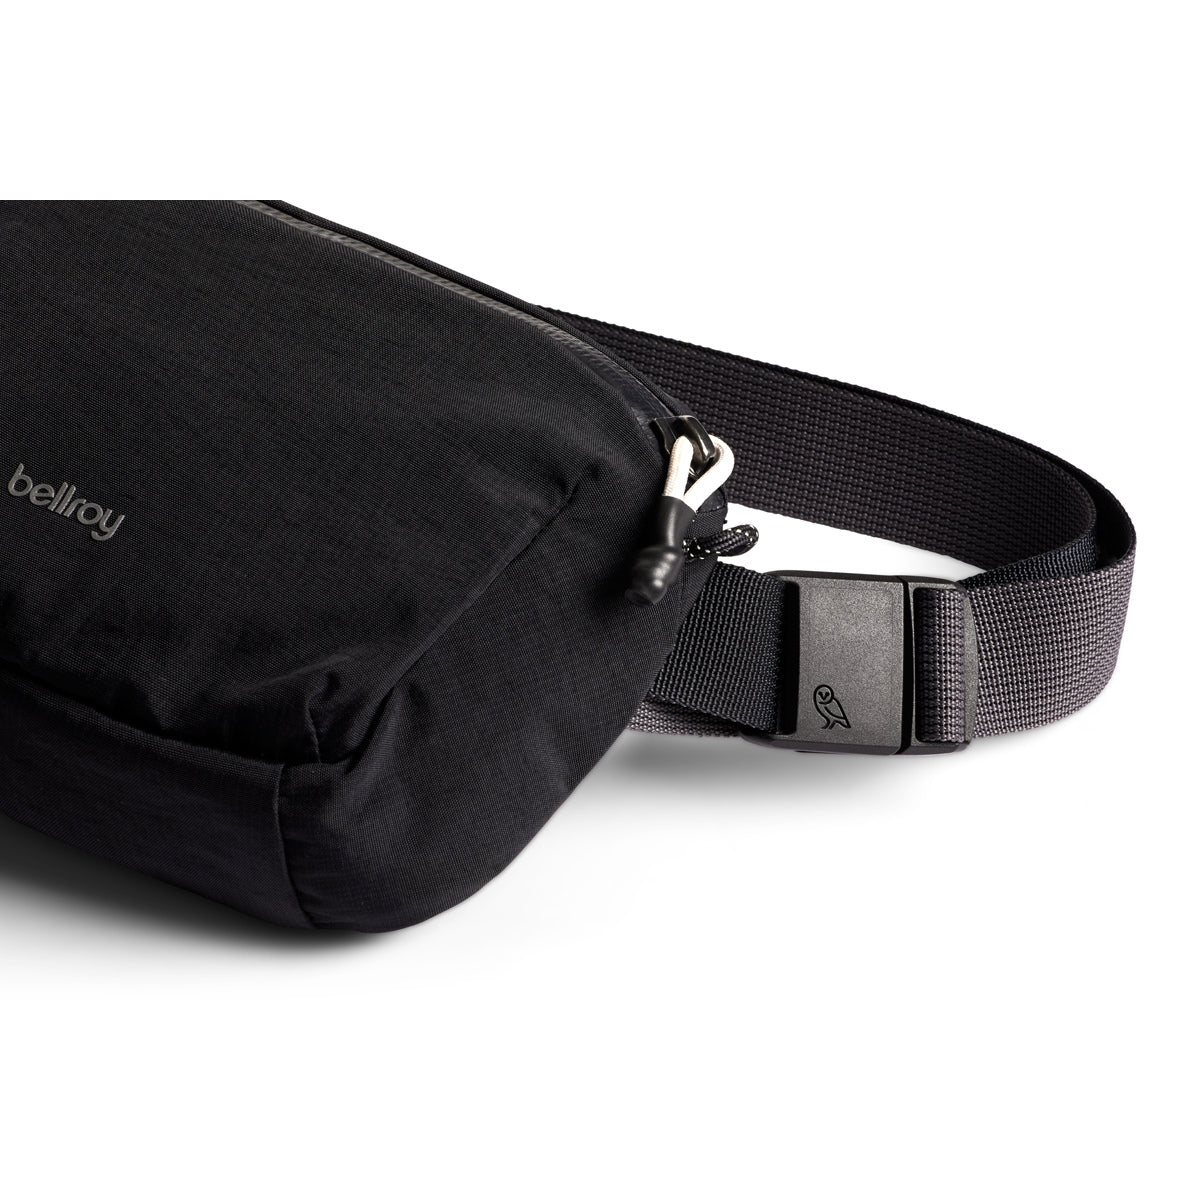 Bellroy Lite Belt Bag in Black